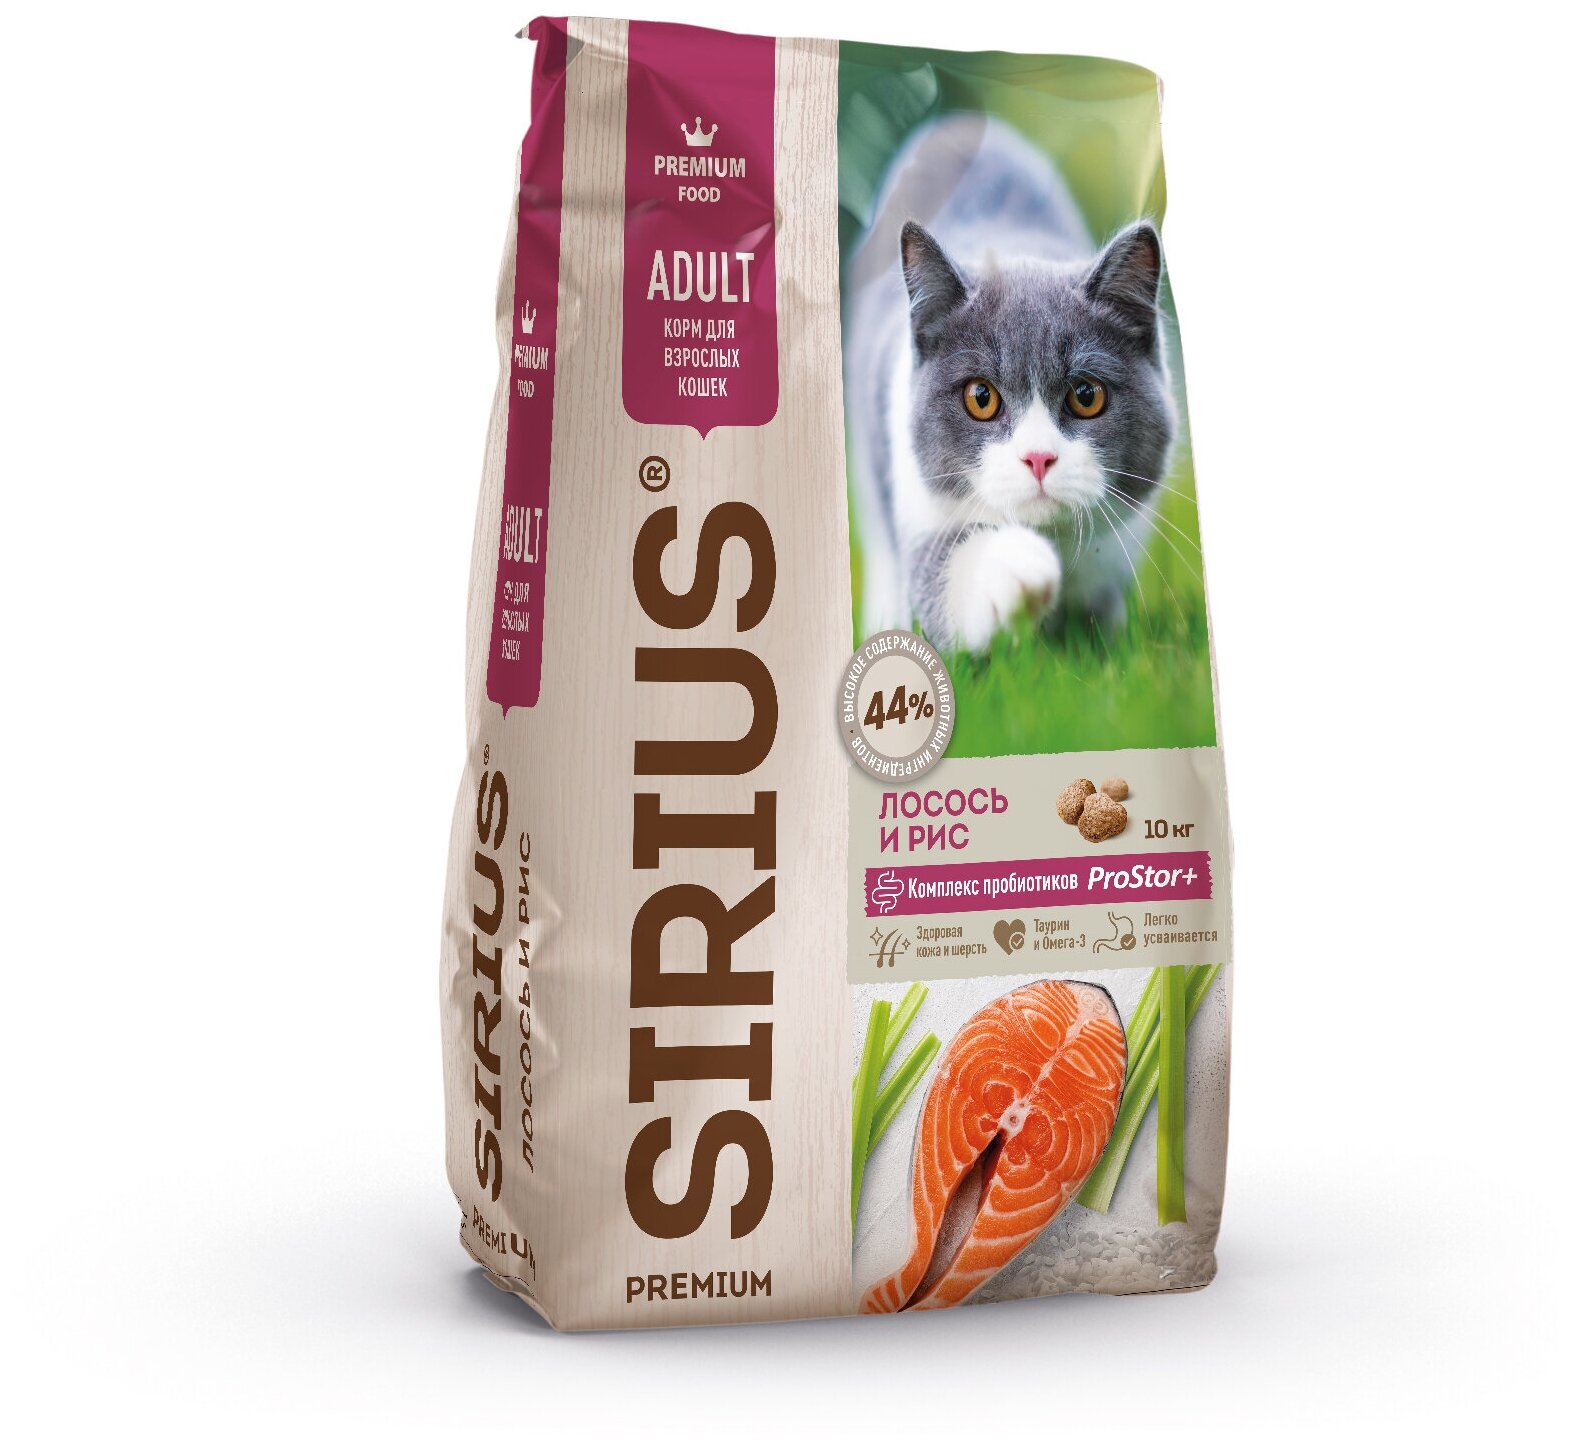 Sirius сухой корм для взрослых кошек 10кг Лосось и рис премиум класса